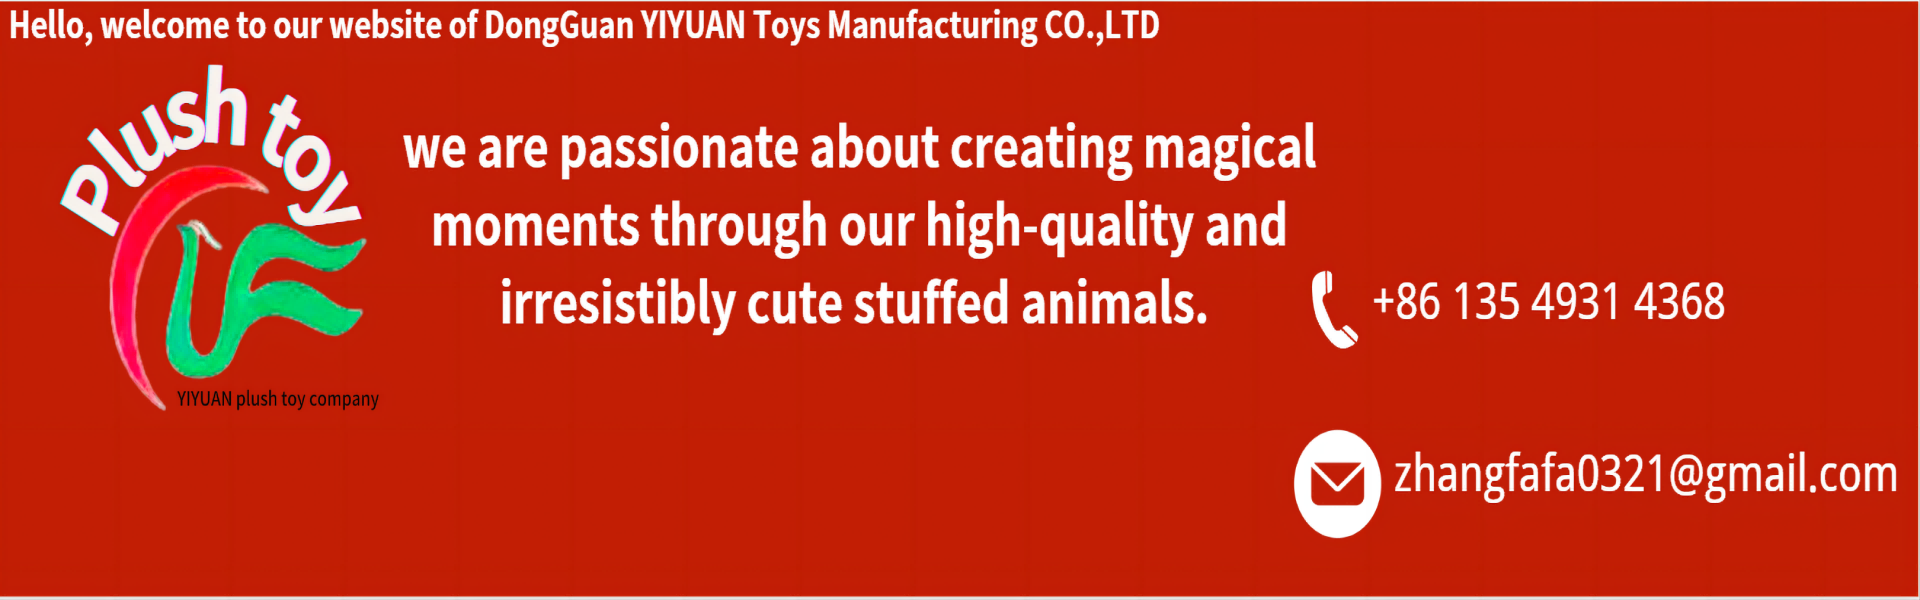 Pehmoinen lelu, korkealaatuinen, ammattimainen joukkueet,yiyuan plush toy company